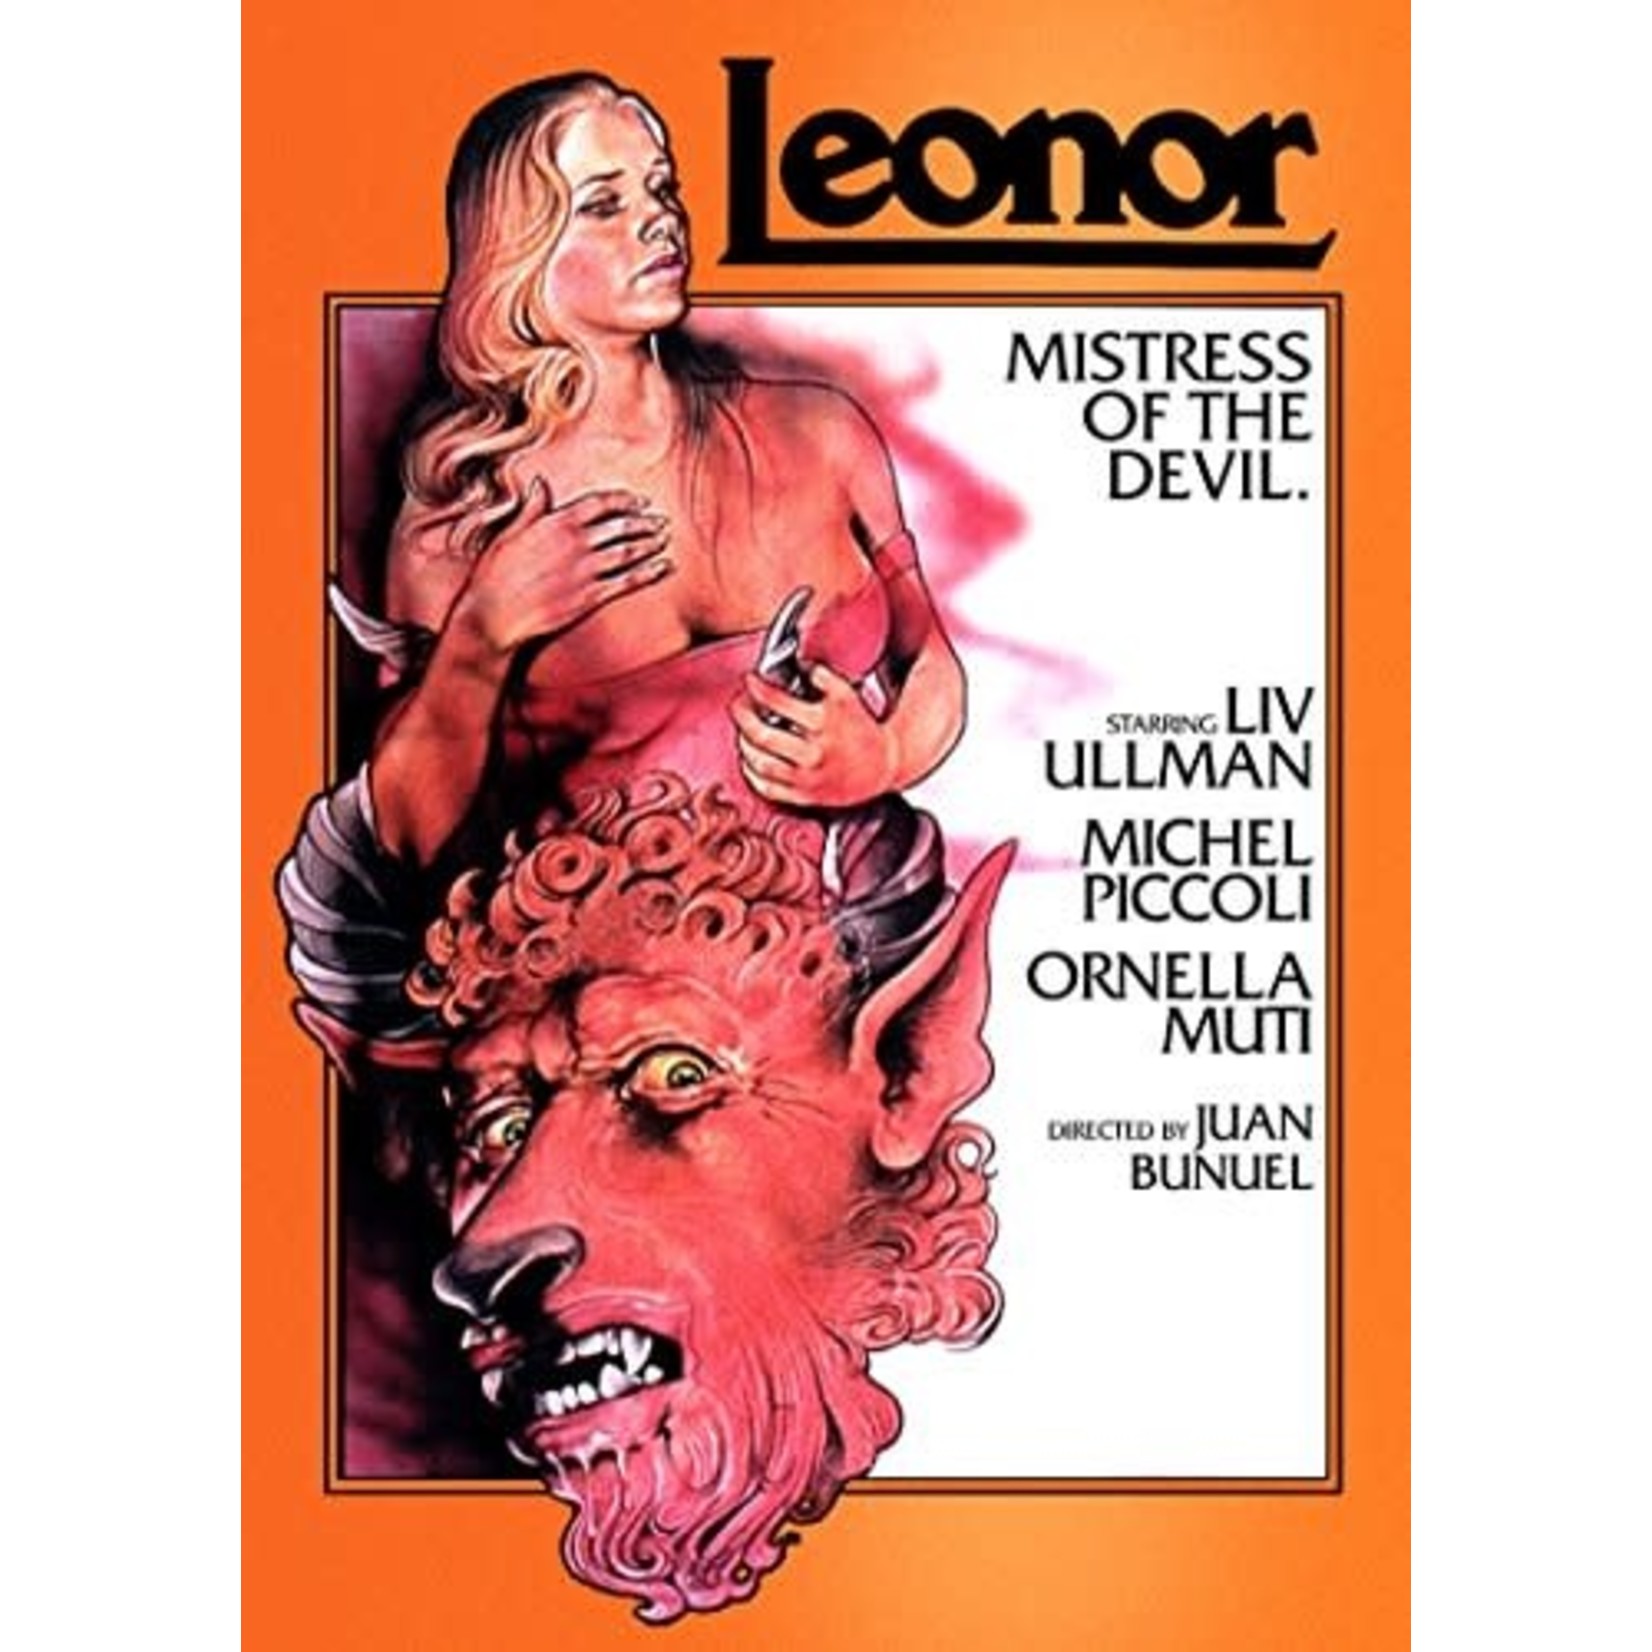 Leonor (1975) [DVD]